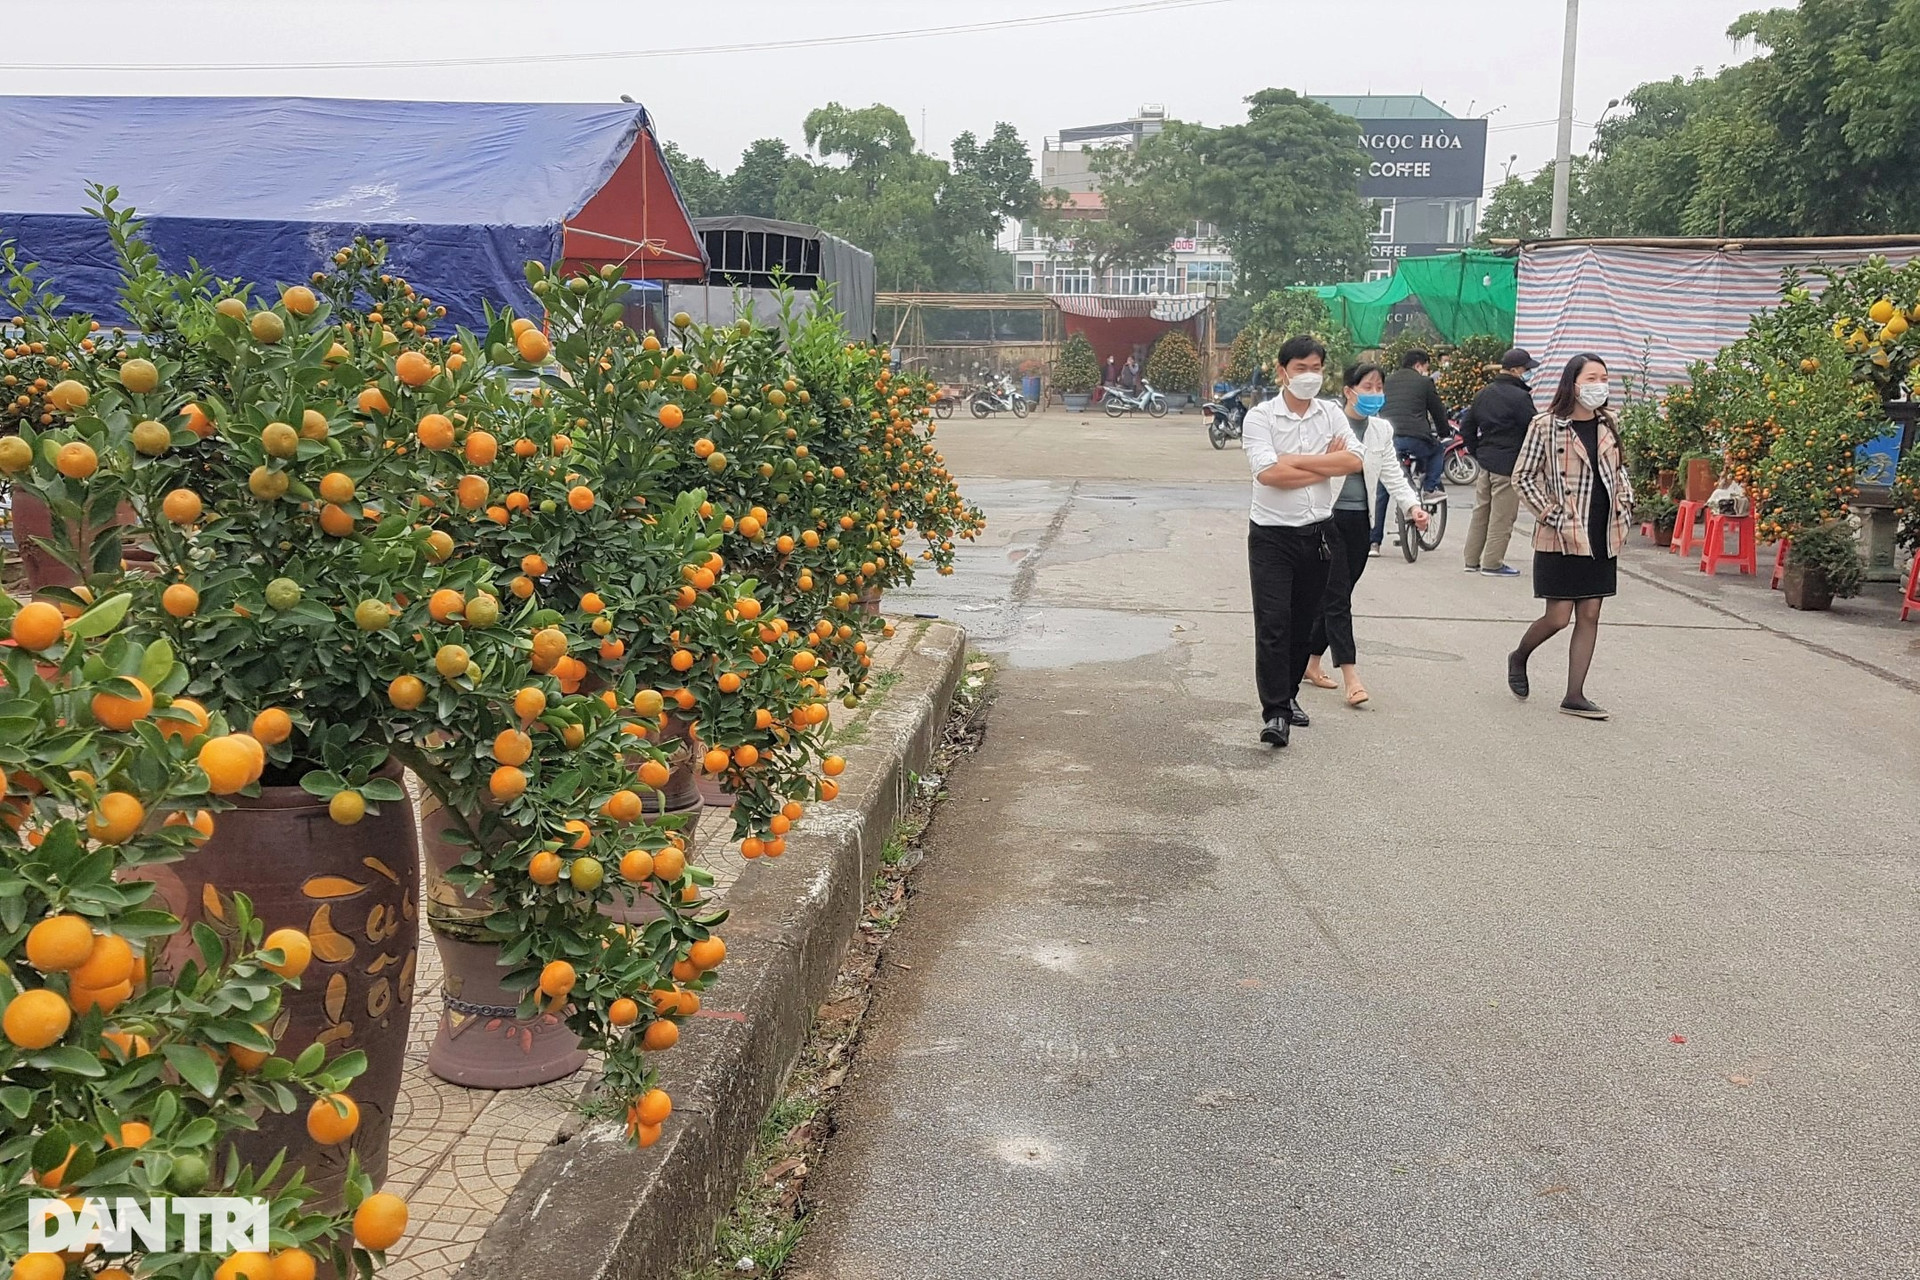 Đi chợ hoa xuân Ninh Bình phải mang căn cước công dân, xét nghiệm Covid-19 - 2